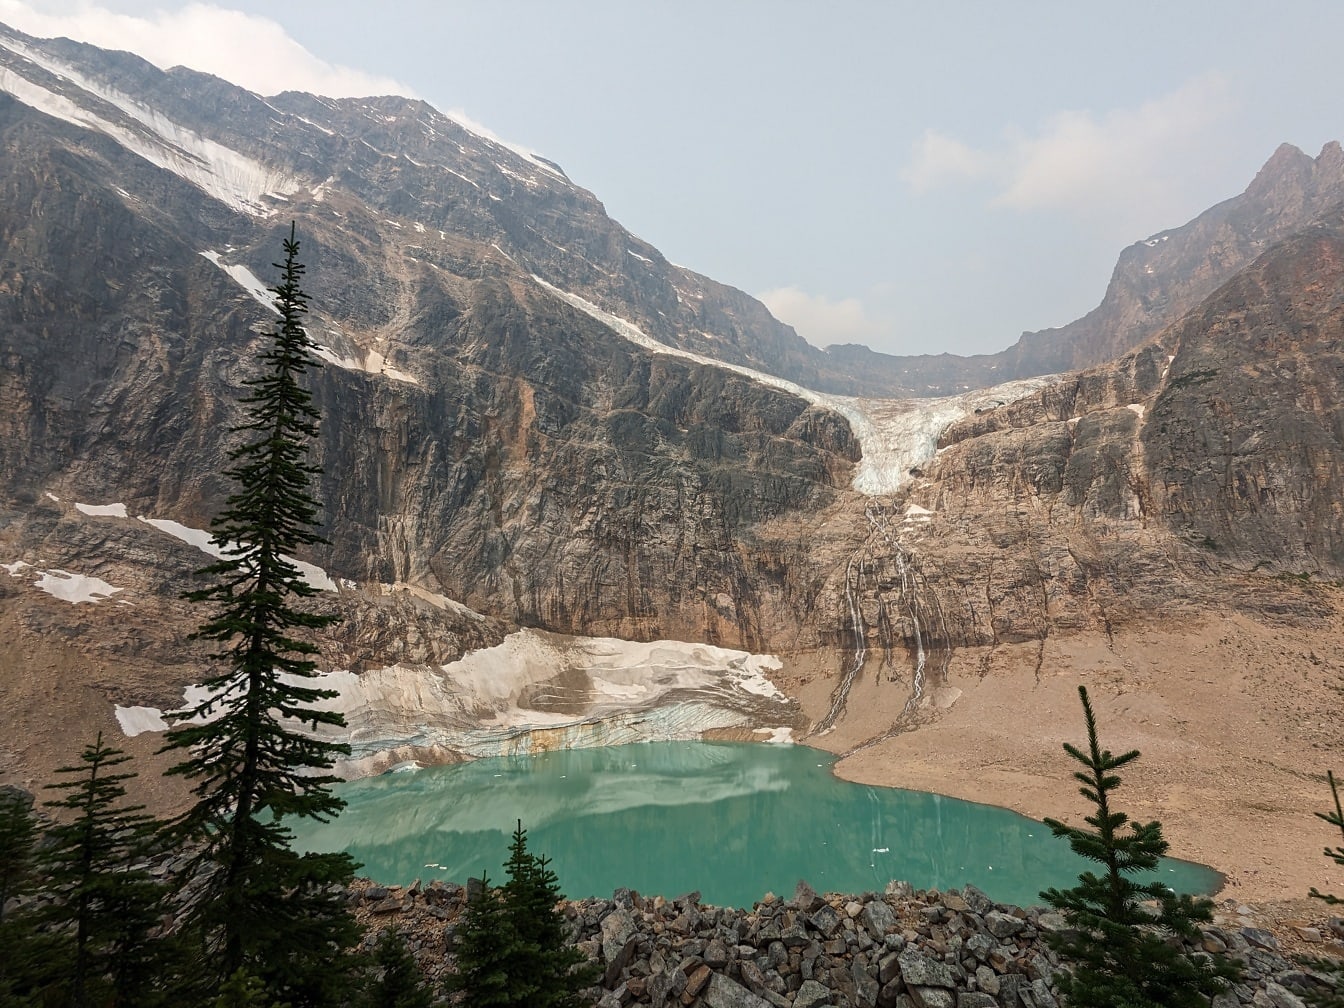 Mountain Edith Cavell med grøn sø i nationalpark Canada